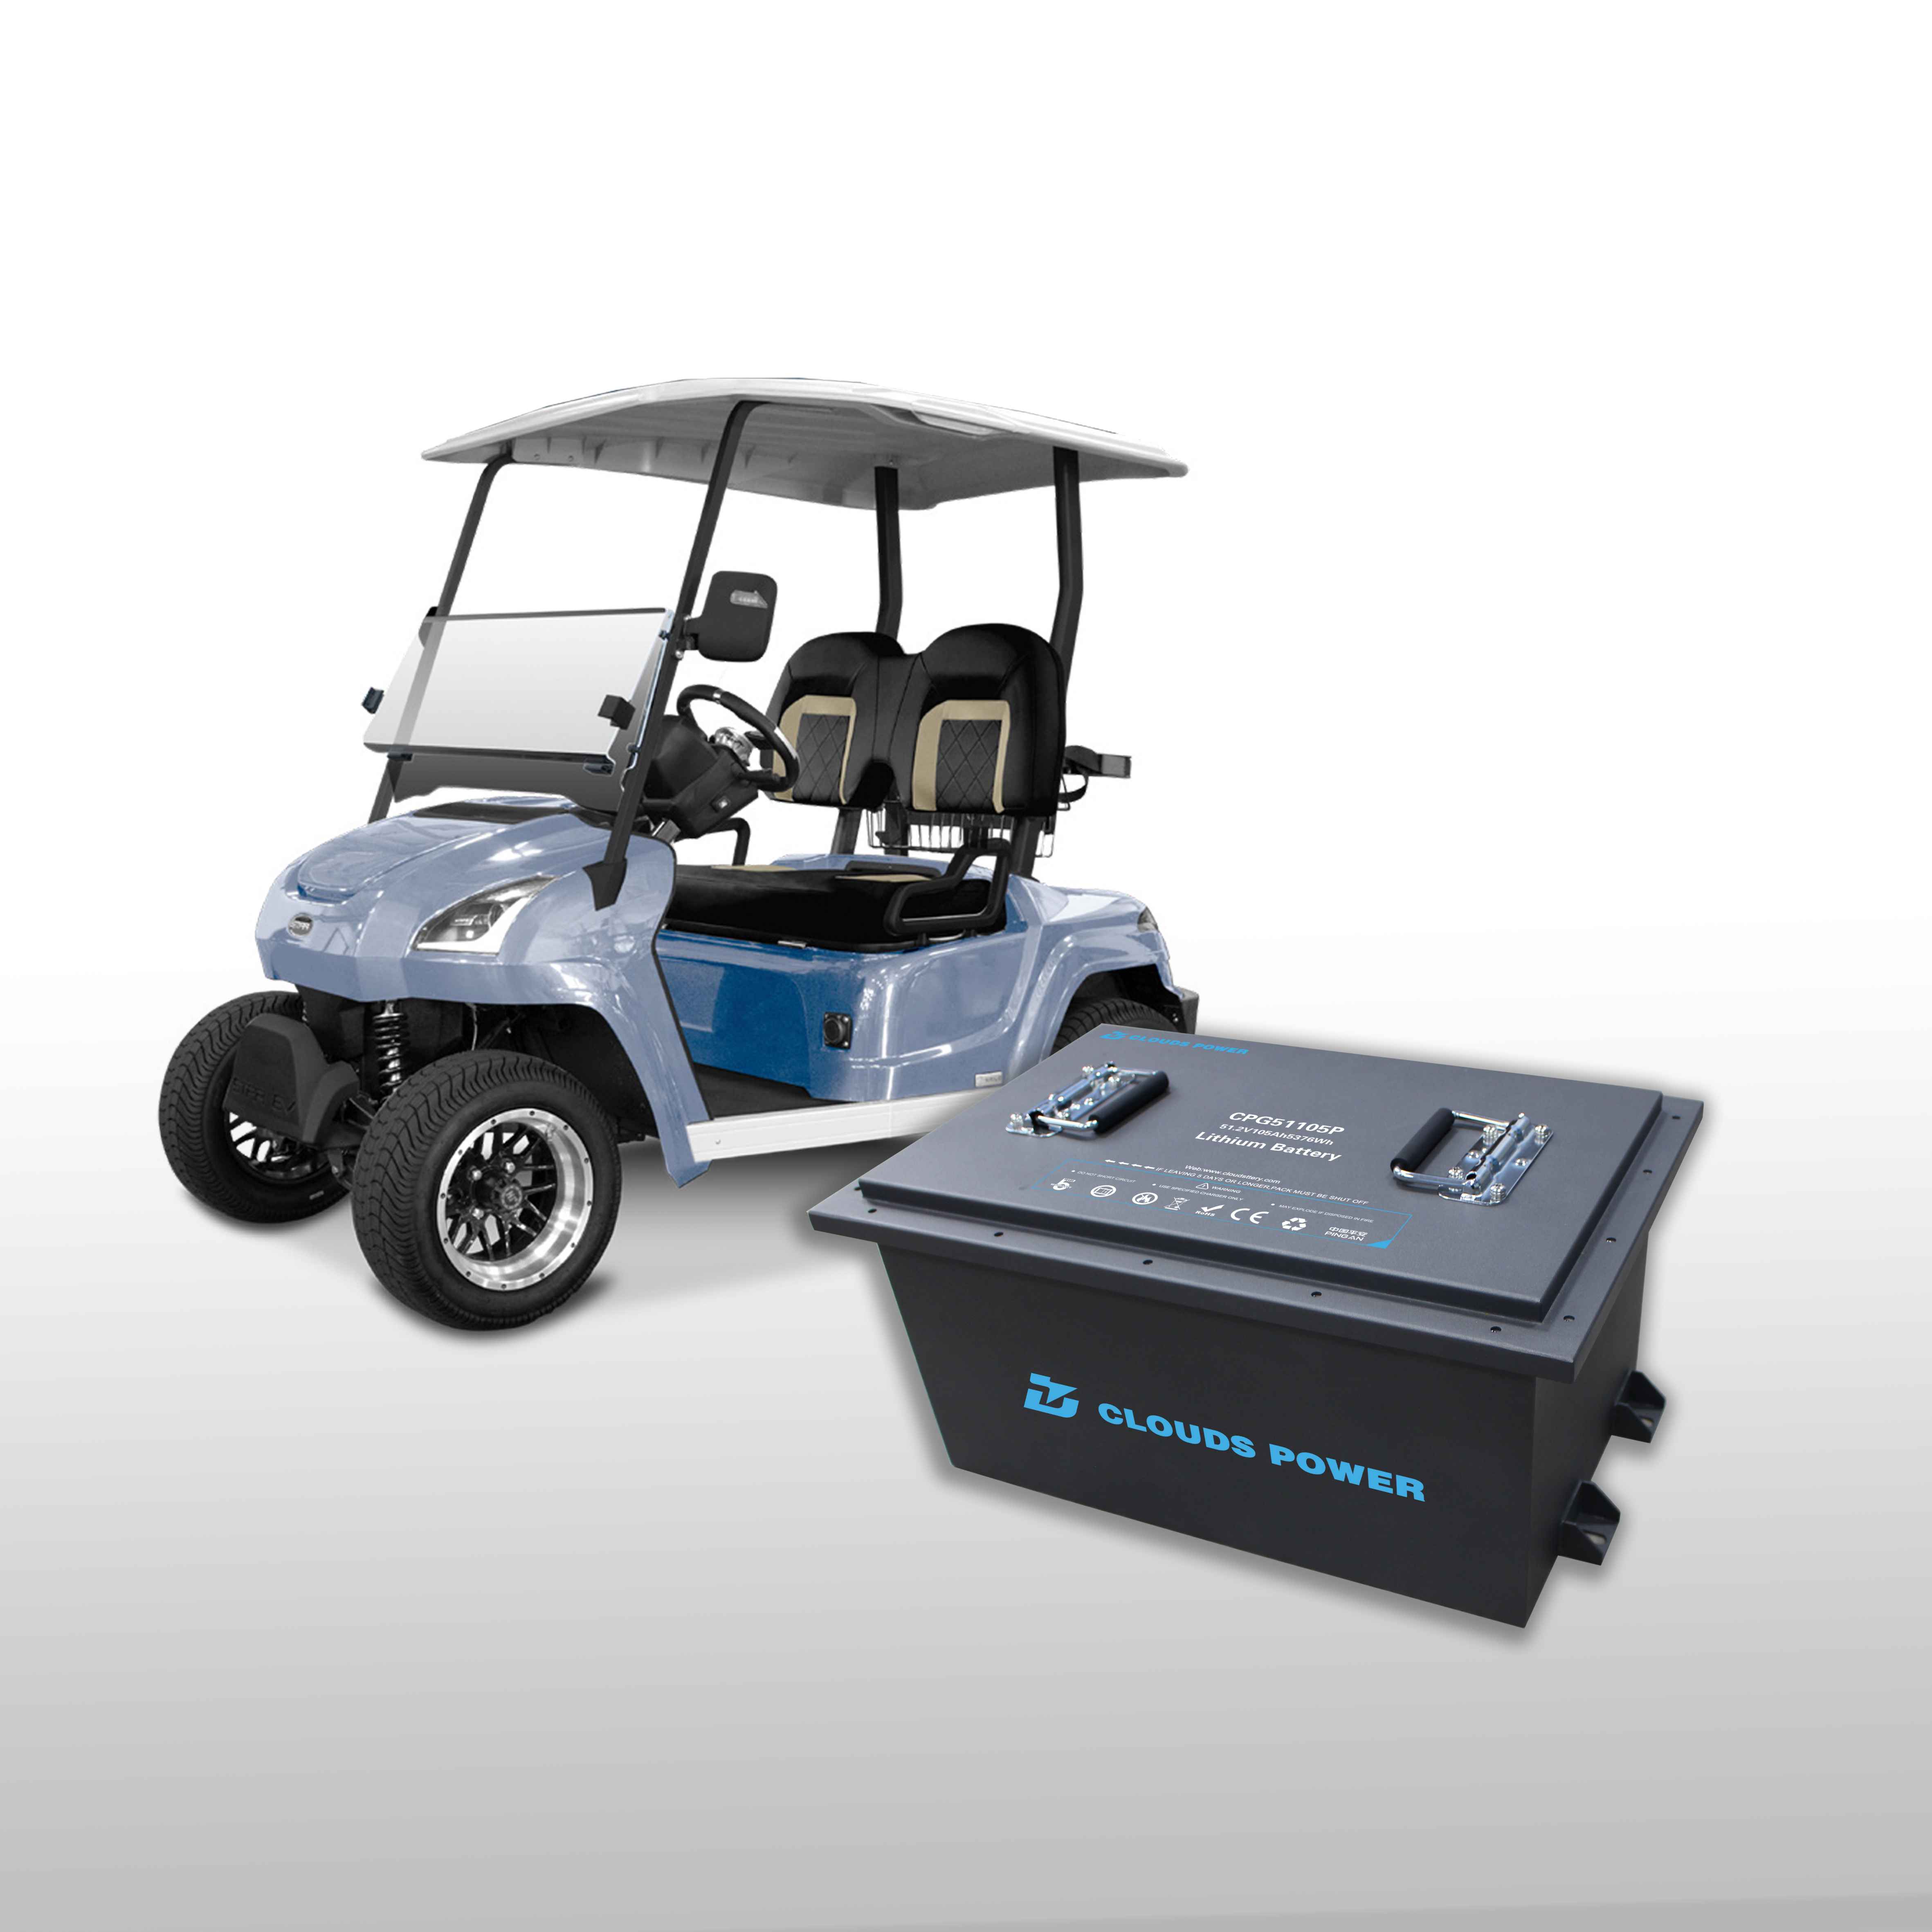 clouds power golf cart battery1